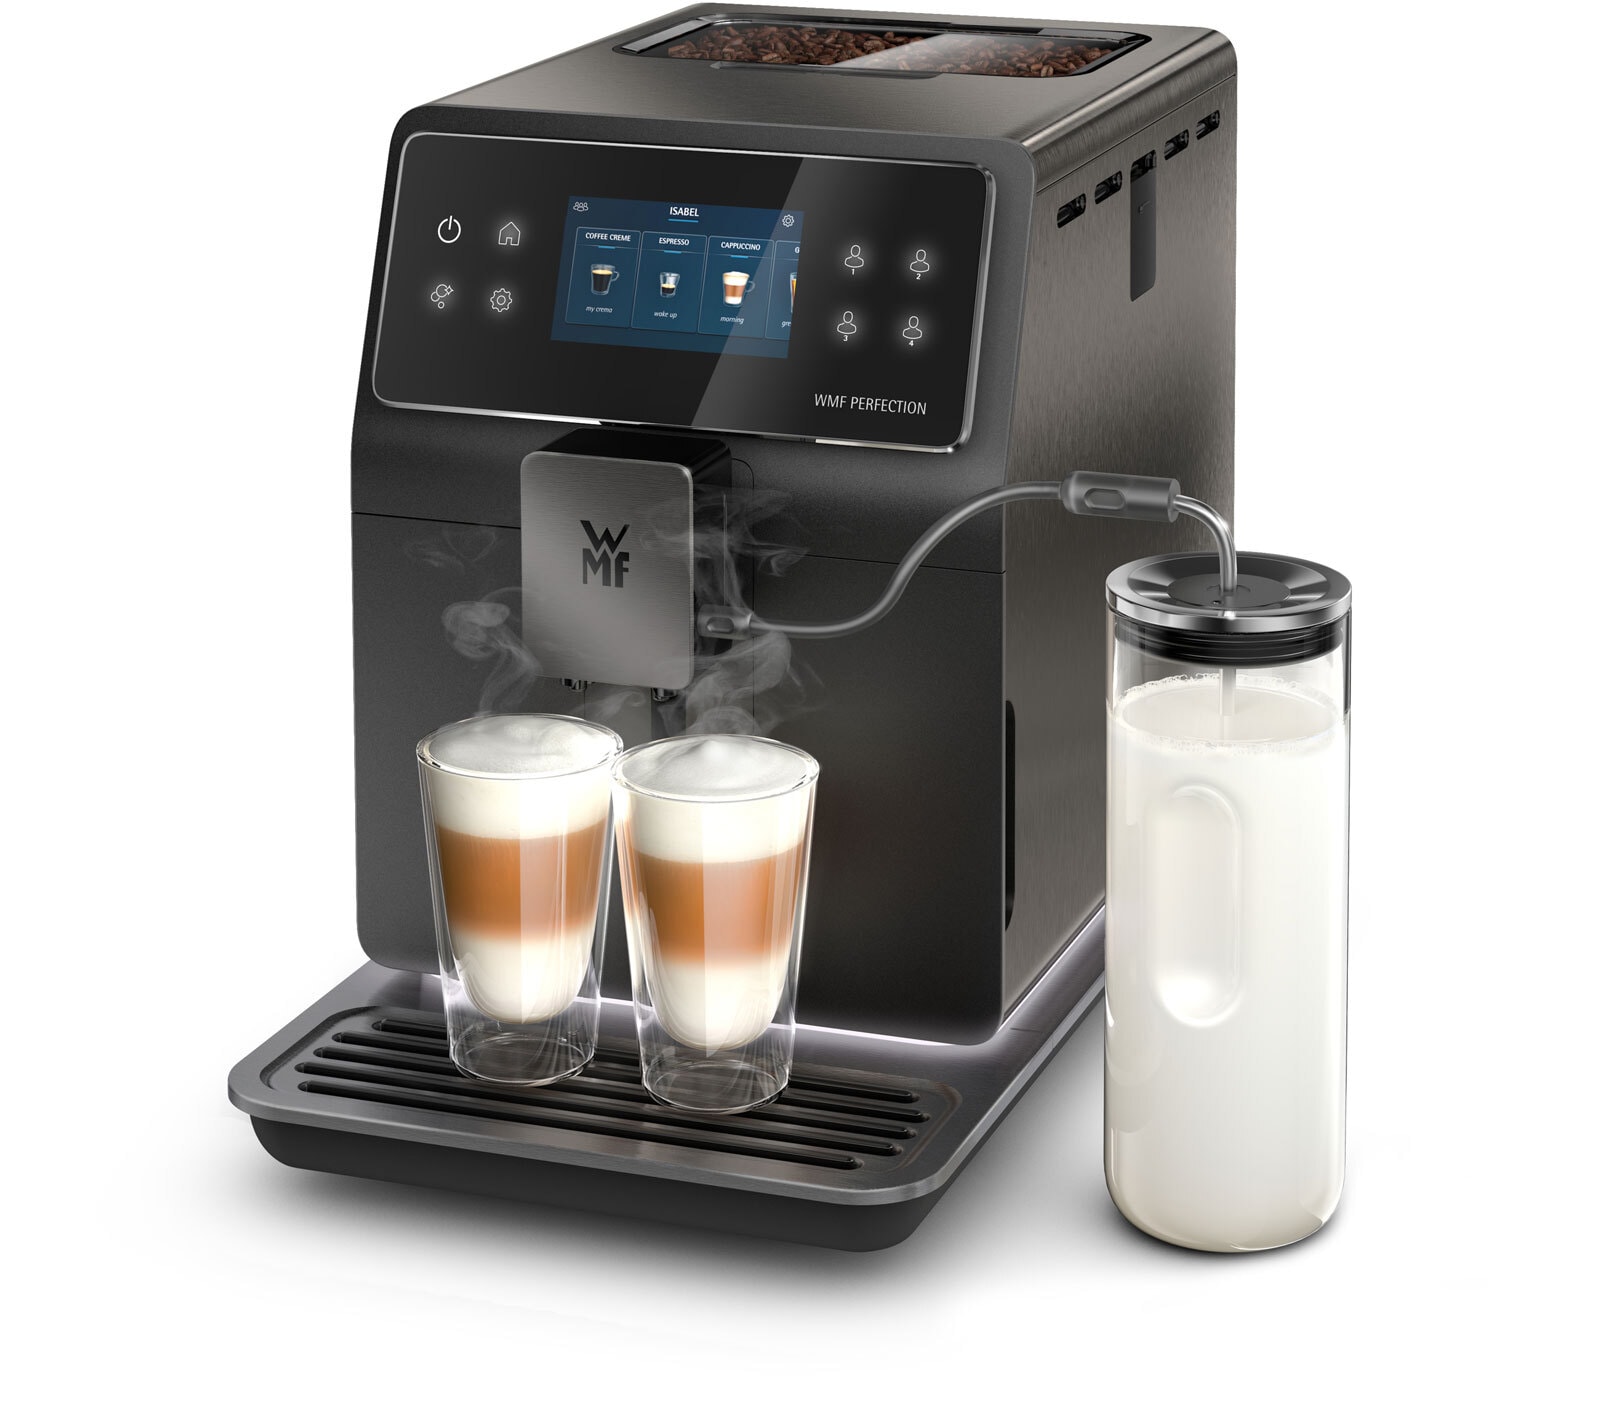 WMF Kaffeevollautomat PERFECTION 890L